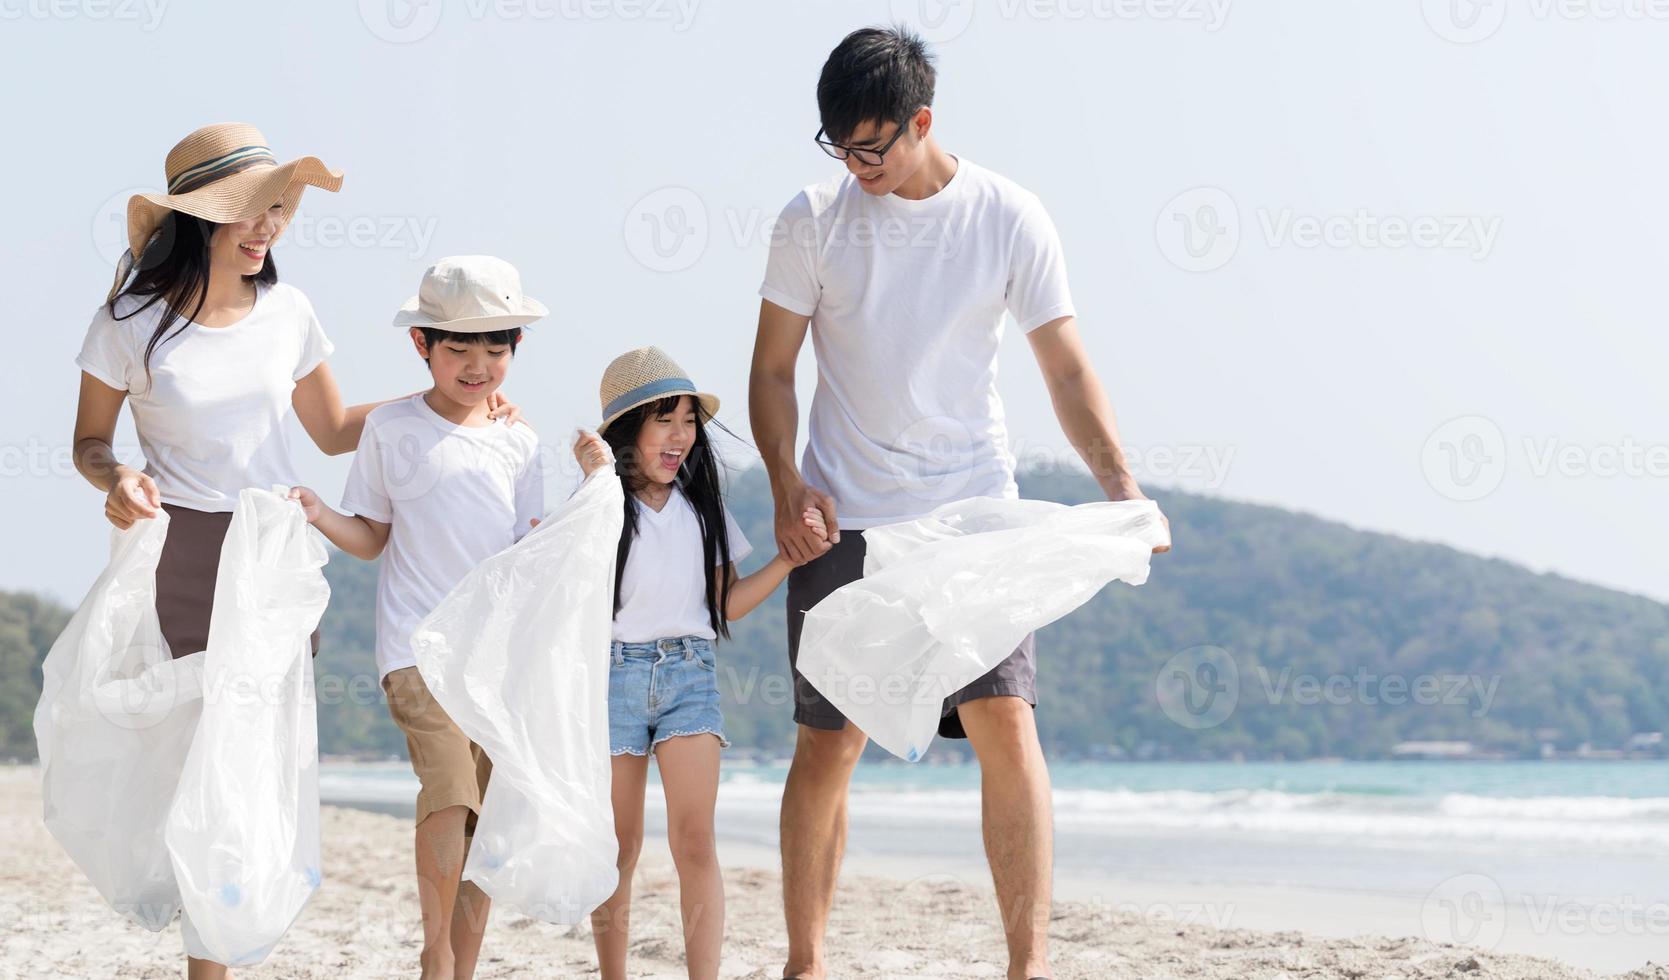 voluntário da família asiática pegando uma garrafa de plástico em uma praia com mar para proteger o meio ambiente foto